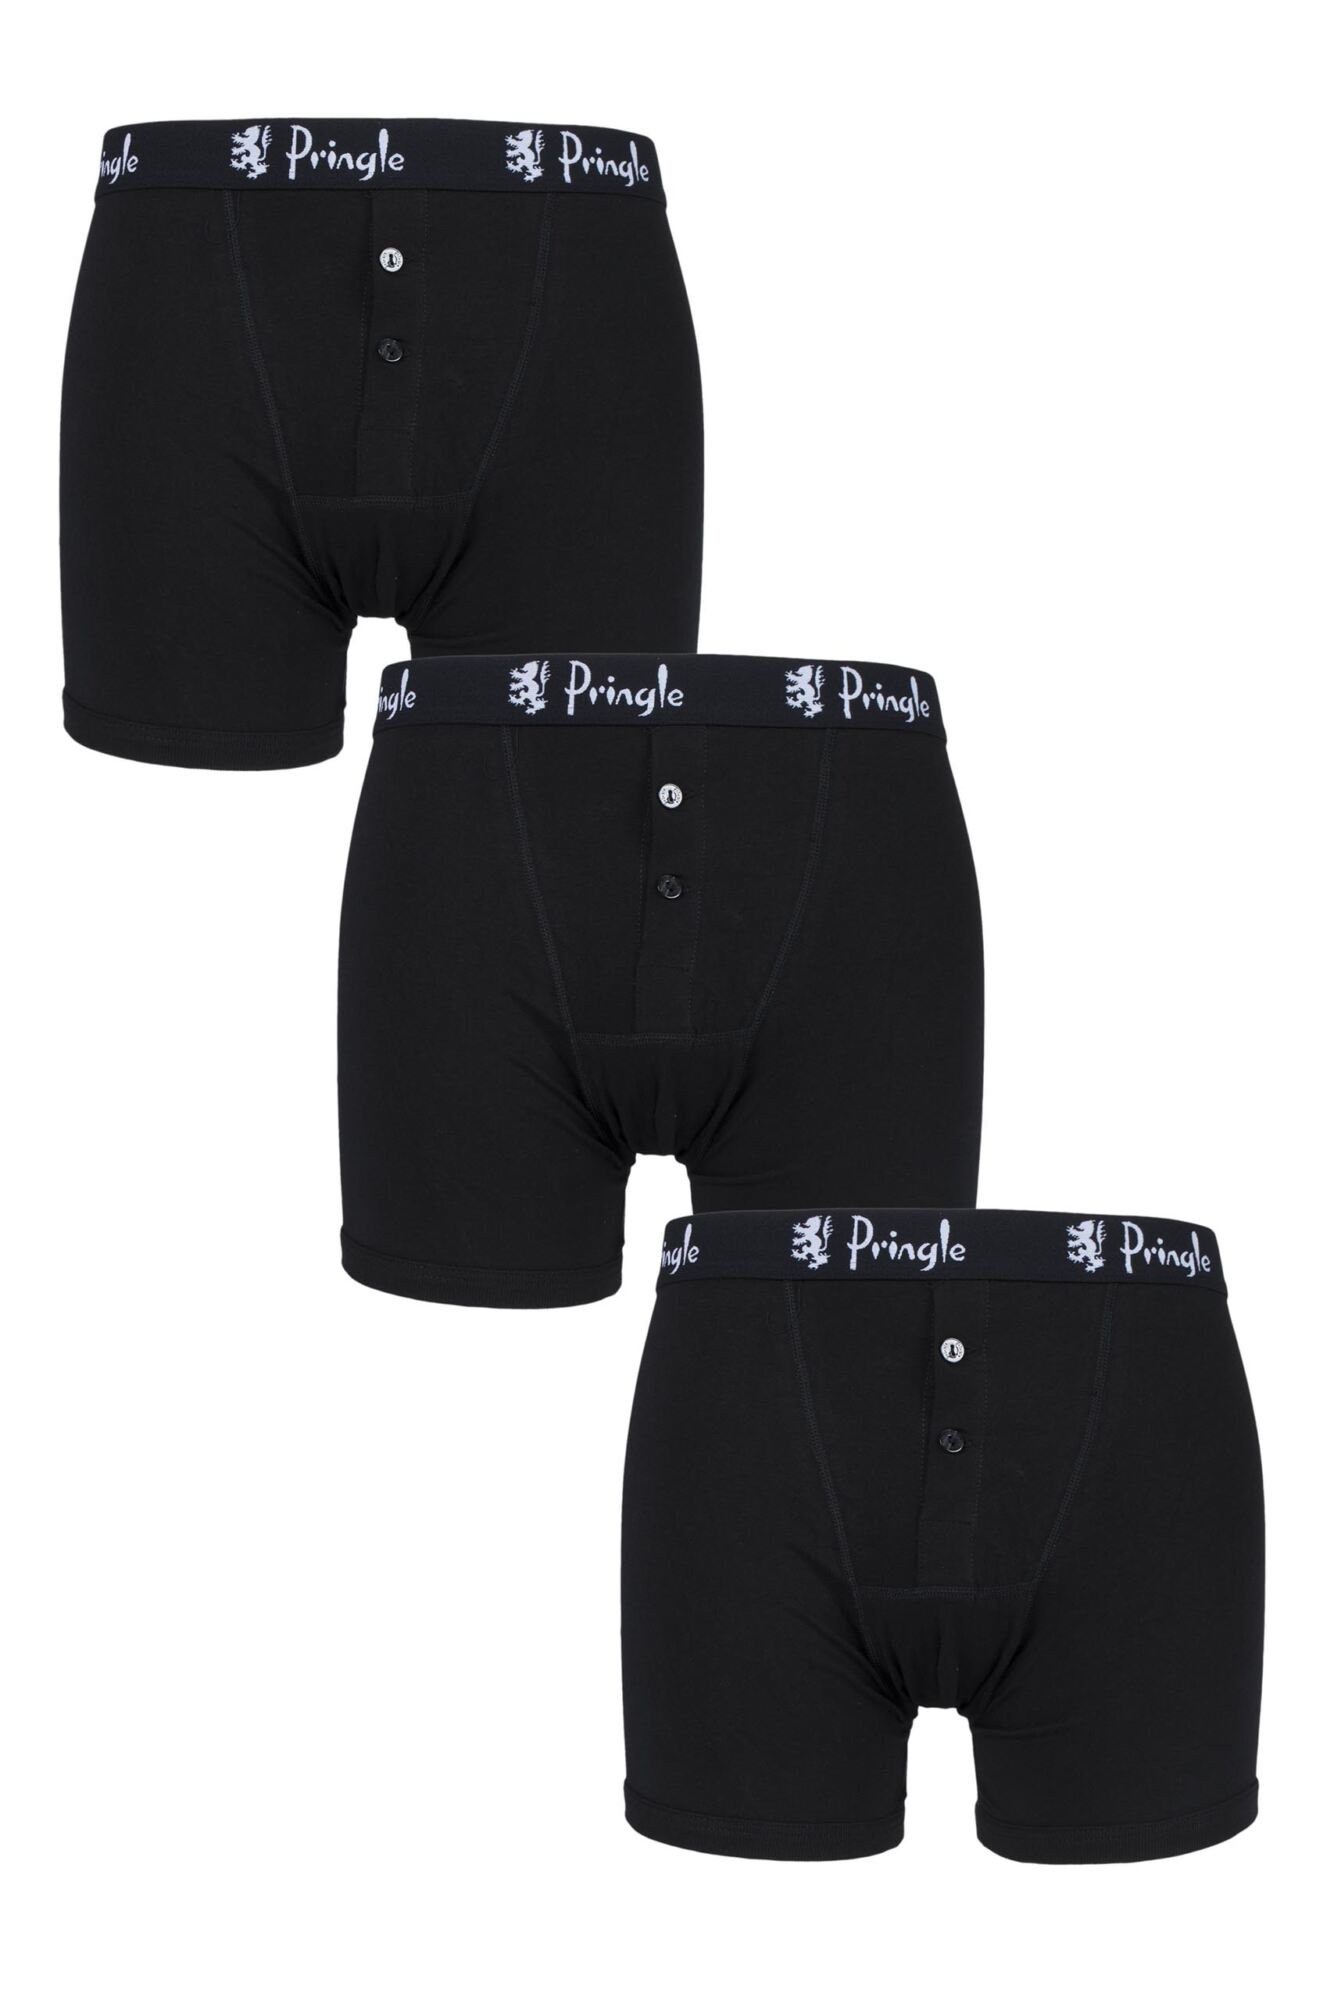 3 Pack Button Front Cotton Boxer Shorts Men's - Pringle